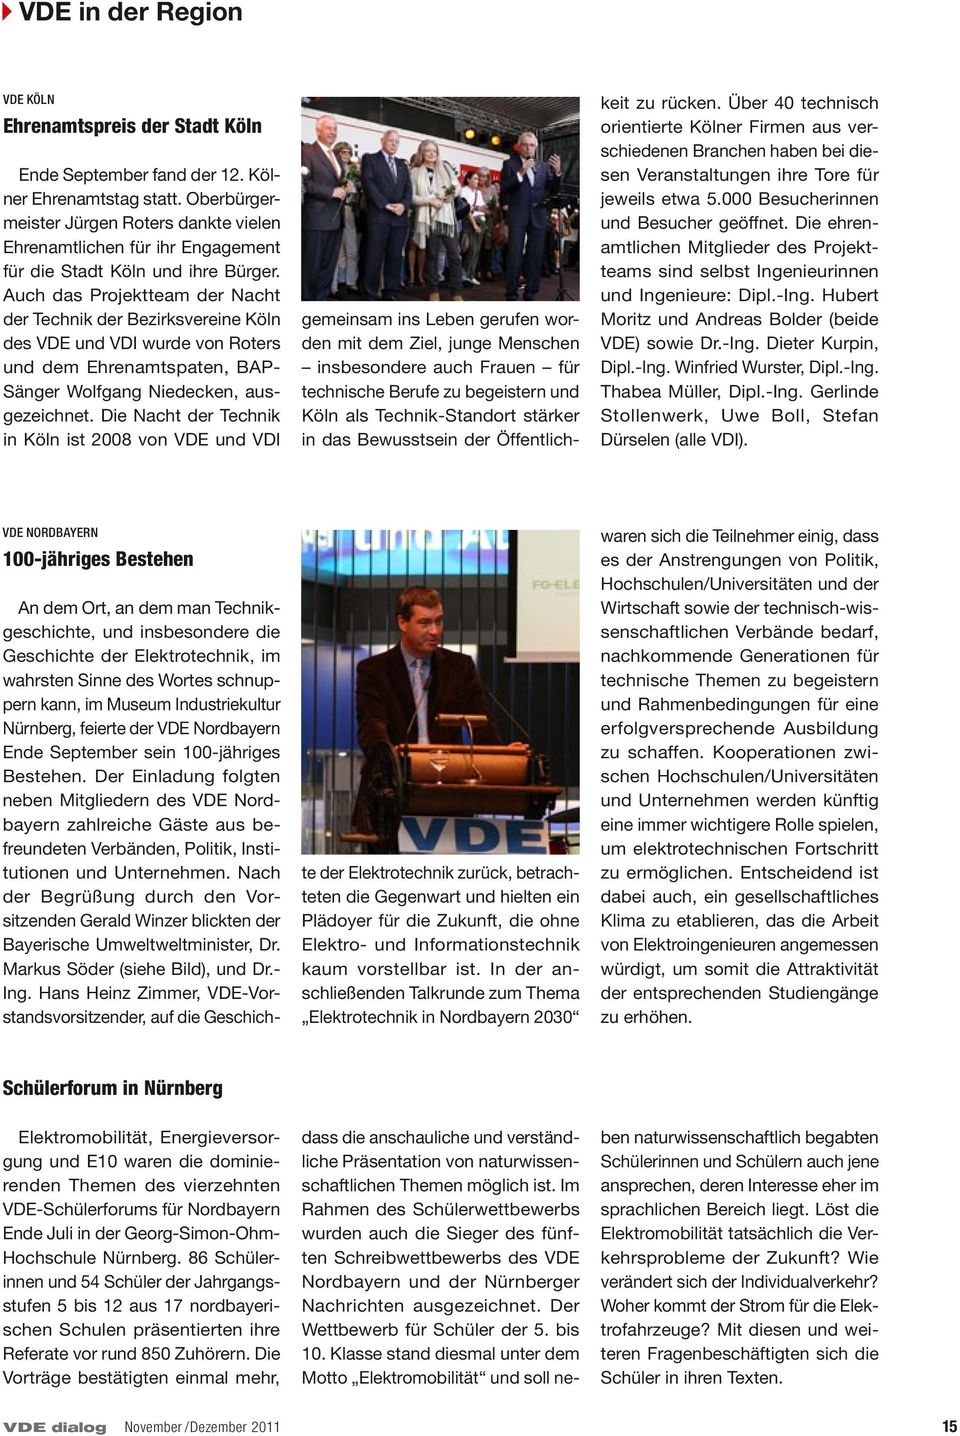 Auch das Projekt team der Nacht der Technik der Be zirks vereine Köln des VDE und VDI wurde von Roters und dem Ehren amts paten, BAP- Sänger Wolf gang Niedecken, ausgezeichnet.